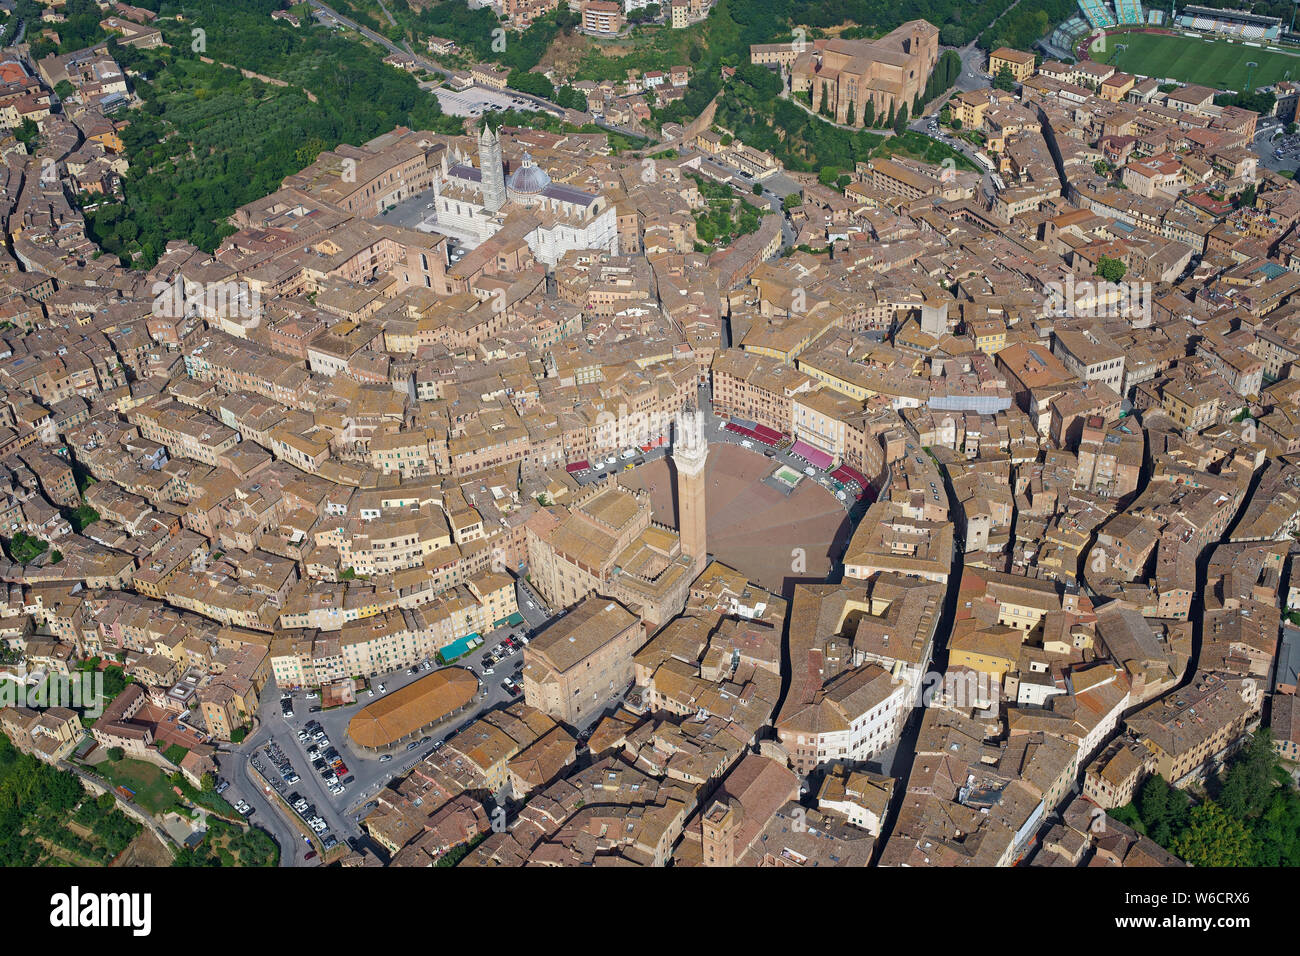 LUFTAUFNAHME. Die historische Stadt Siena mit ihren zwei Haupttouristenattraktionen: Der Piazza del Campo und der Kathedrale. Provinz Siena, Toskana, Italien. Stockfoto